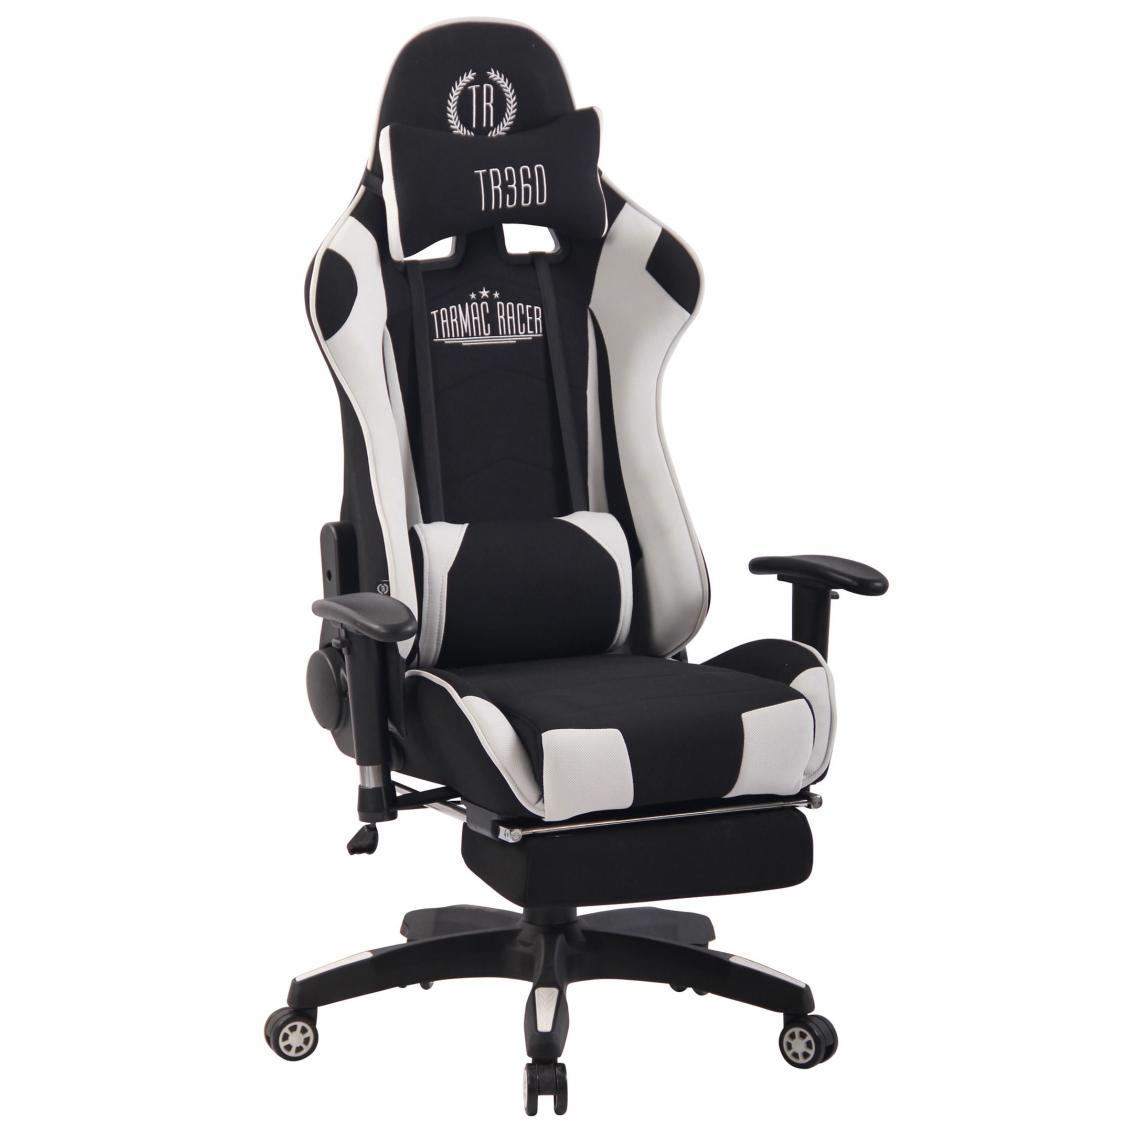 Icaverne - Moderne Chaise de bureau categorie Bogota XFM en tissu couleur noir et blanc - Chaises